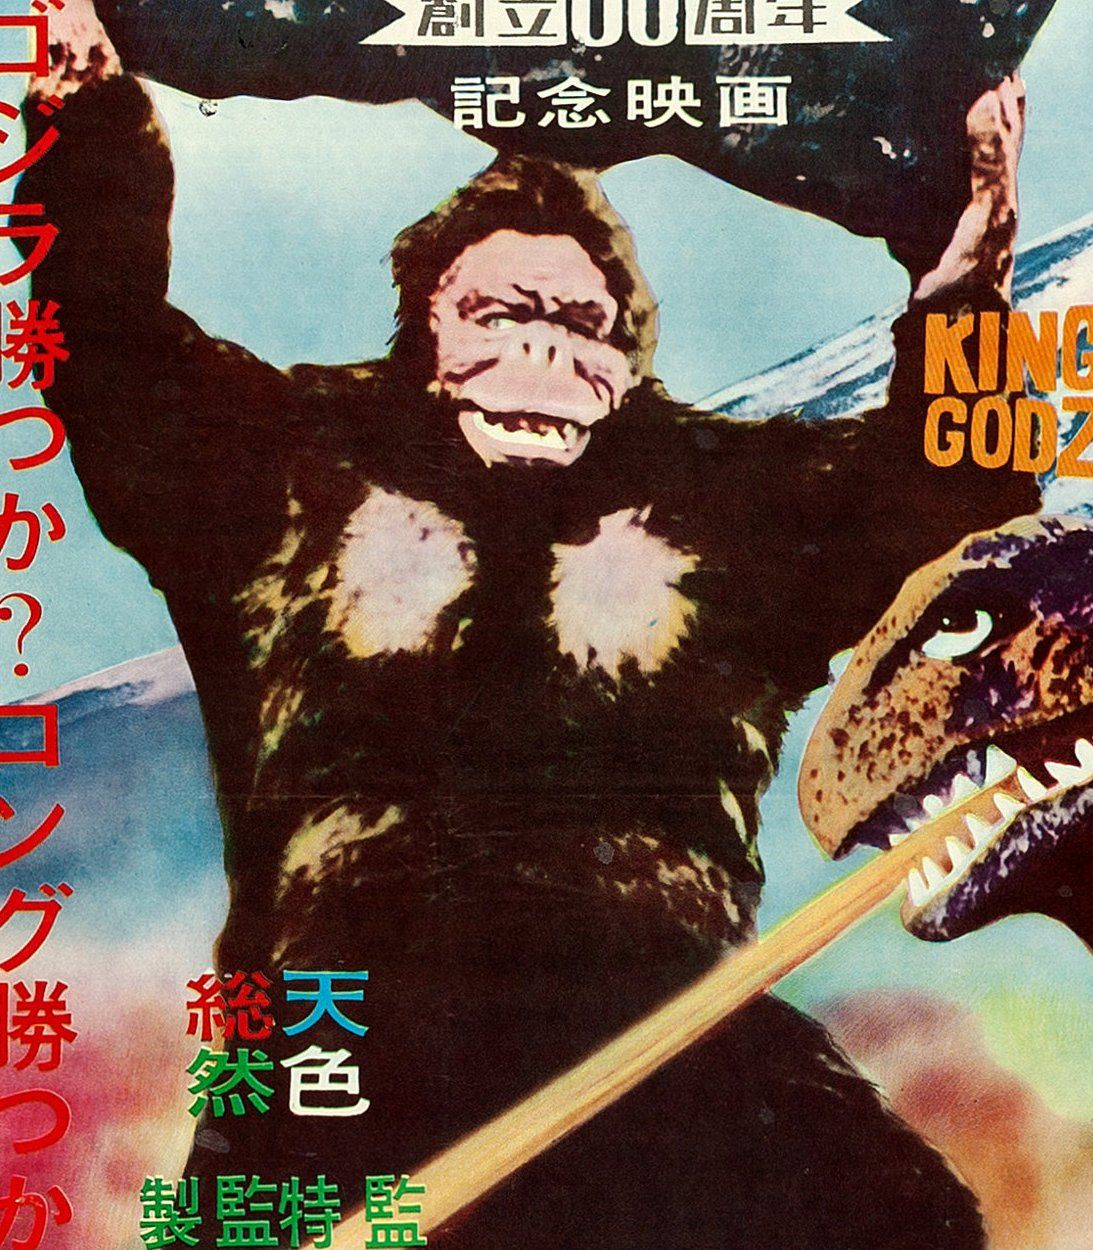 King Kong Godzilla Poster Vertical